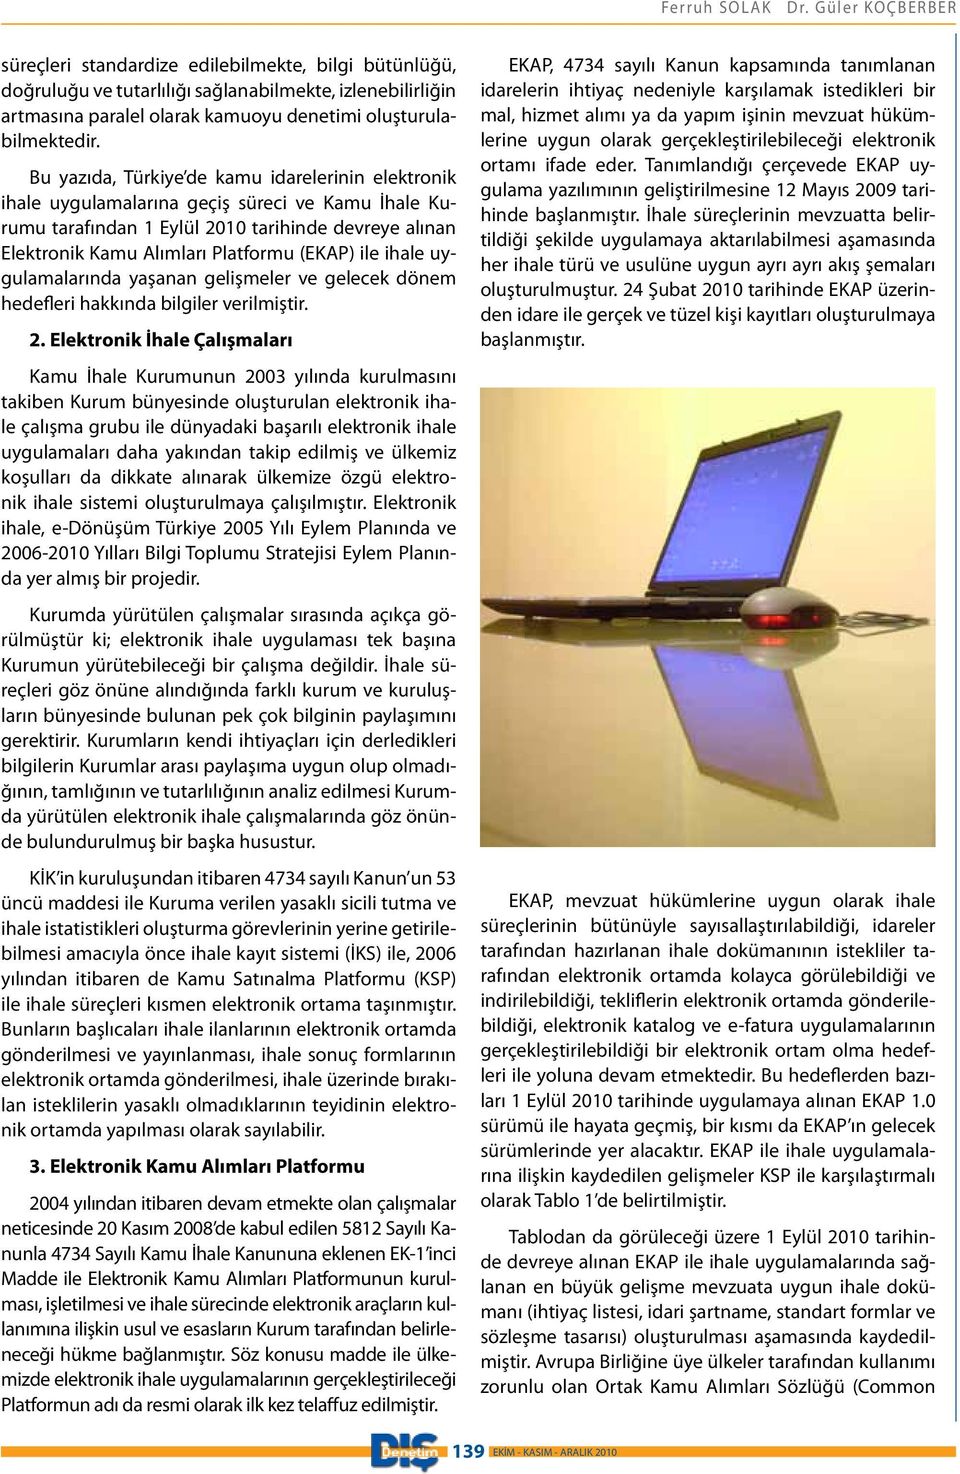 Bu yazıda, Türkiye de kamu idarelerinin elektronik ihale uygulamalarına geçiş süreci ve Kamu İhale Kurumu tarafından 1 Eylül 2010 tarihinde devreye alınan Elektronik Kamu Alımları Platformu (EKAP)